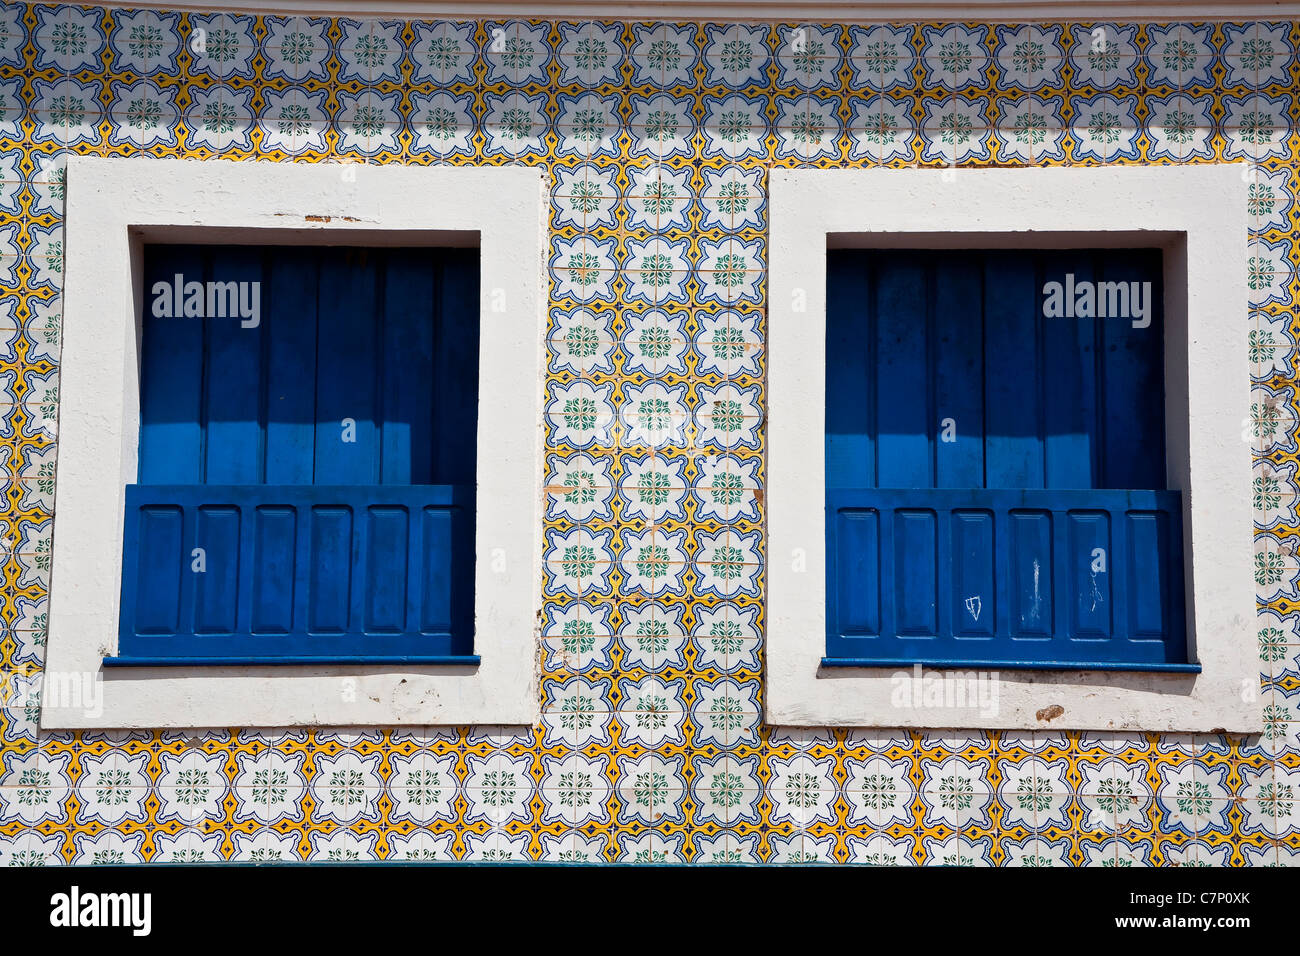 Sobrados zweistöckige kolonialen Häuser Fassaden des portugiesischen Azulejos Attraktionen für Besucher bei Alcântara Maranhão Brasilien Stockfoto